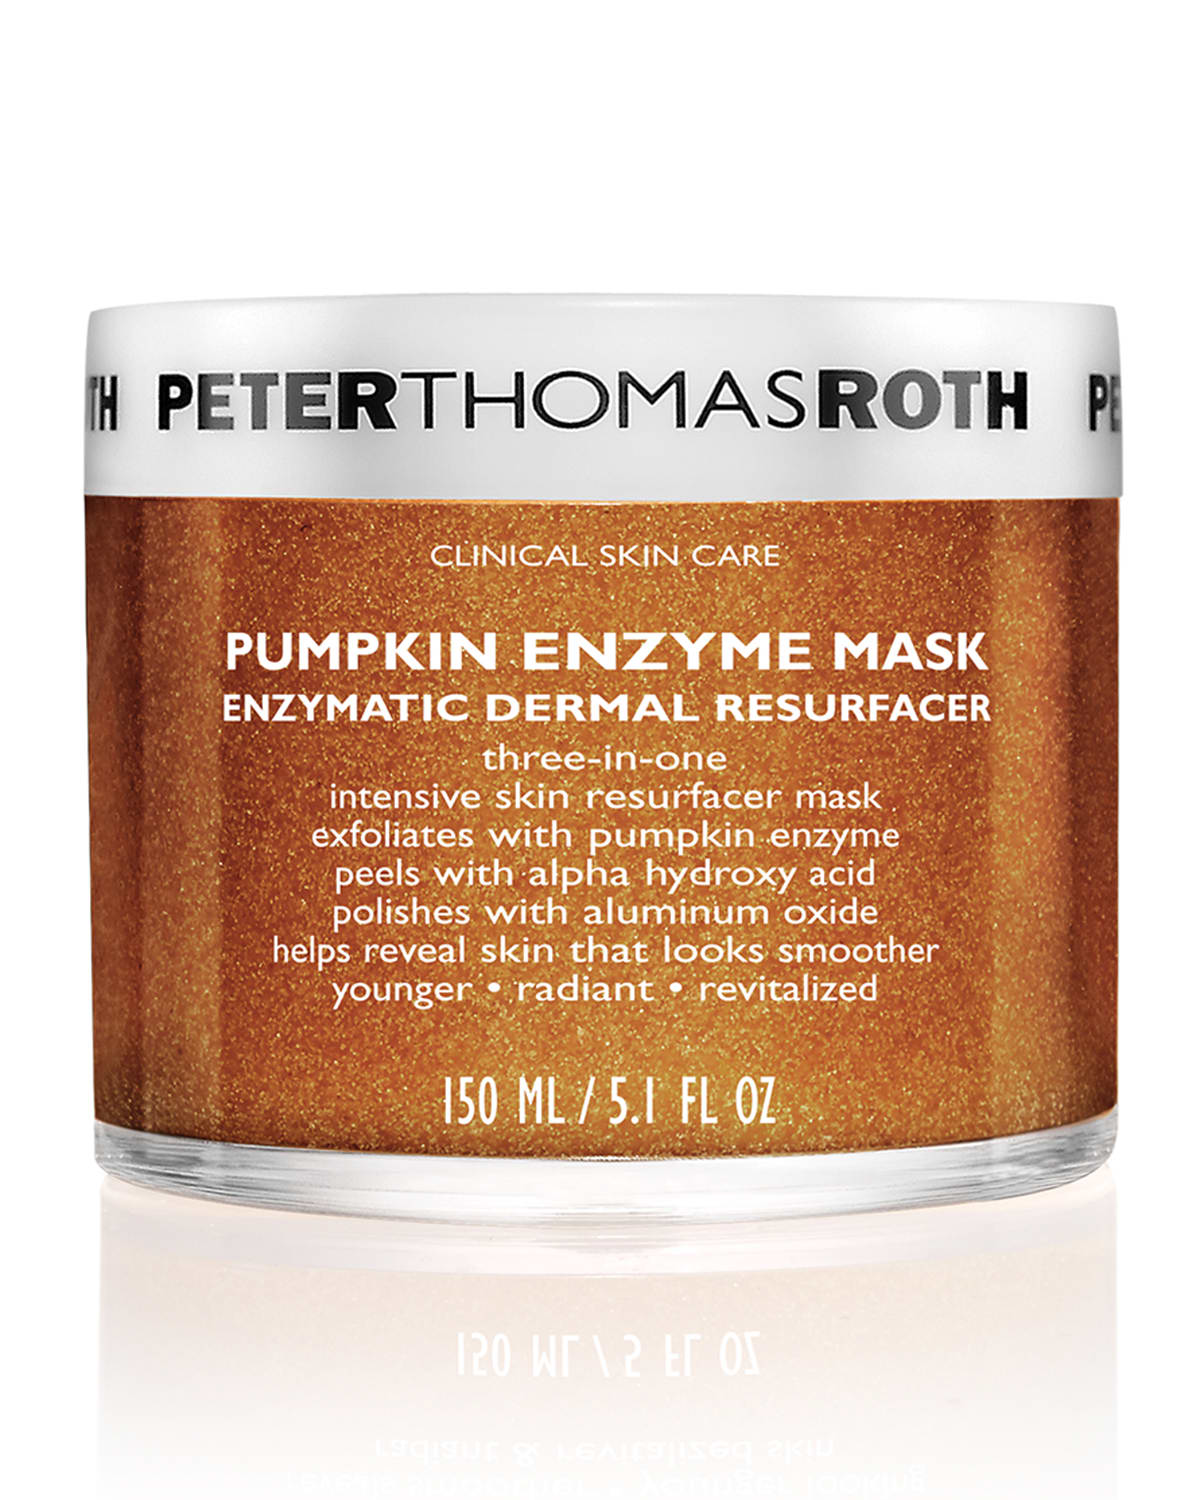 Pumpkin Enzyme Mask - Enzymatic Dermal Resurfacer, 5.1 oz.